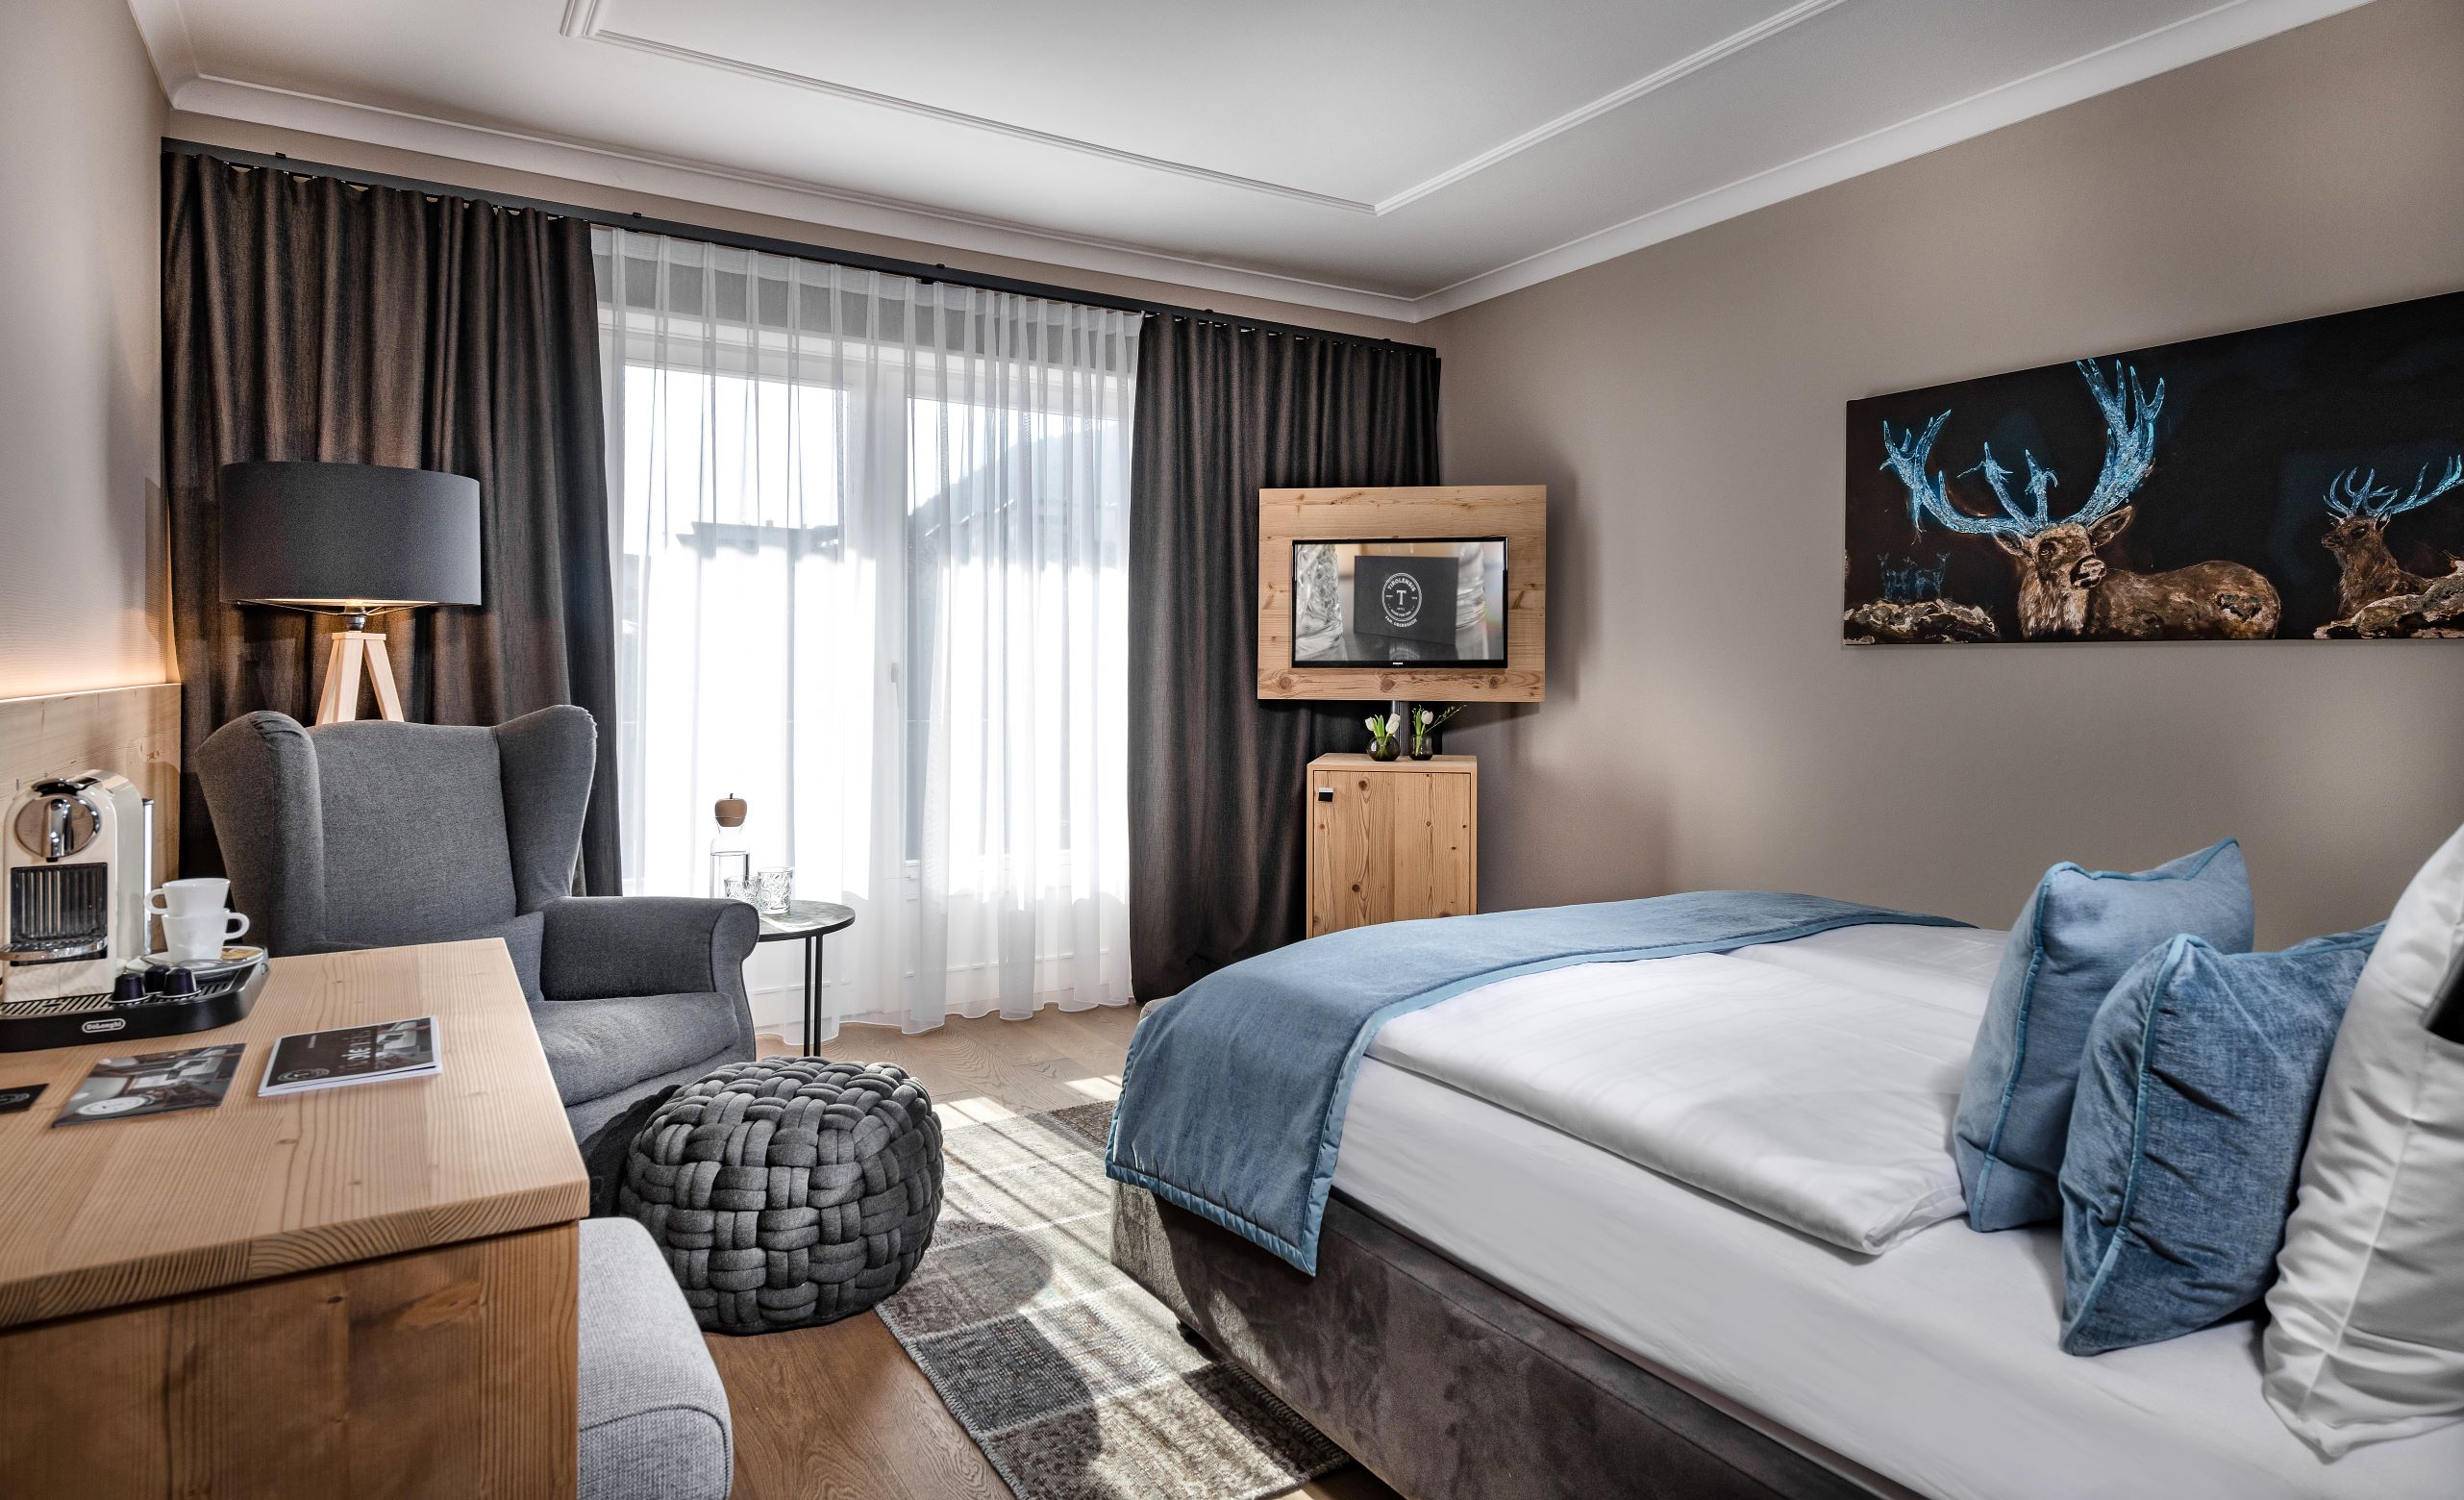 4 Nächte im Chaletzimmer für 2 Personen im Hotel Tirolensis